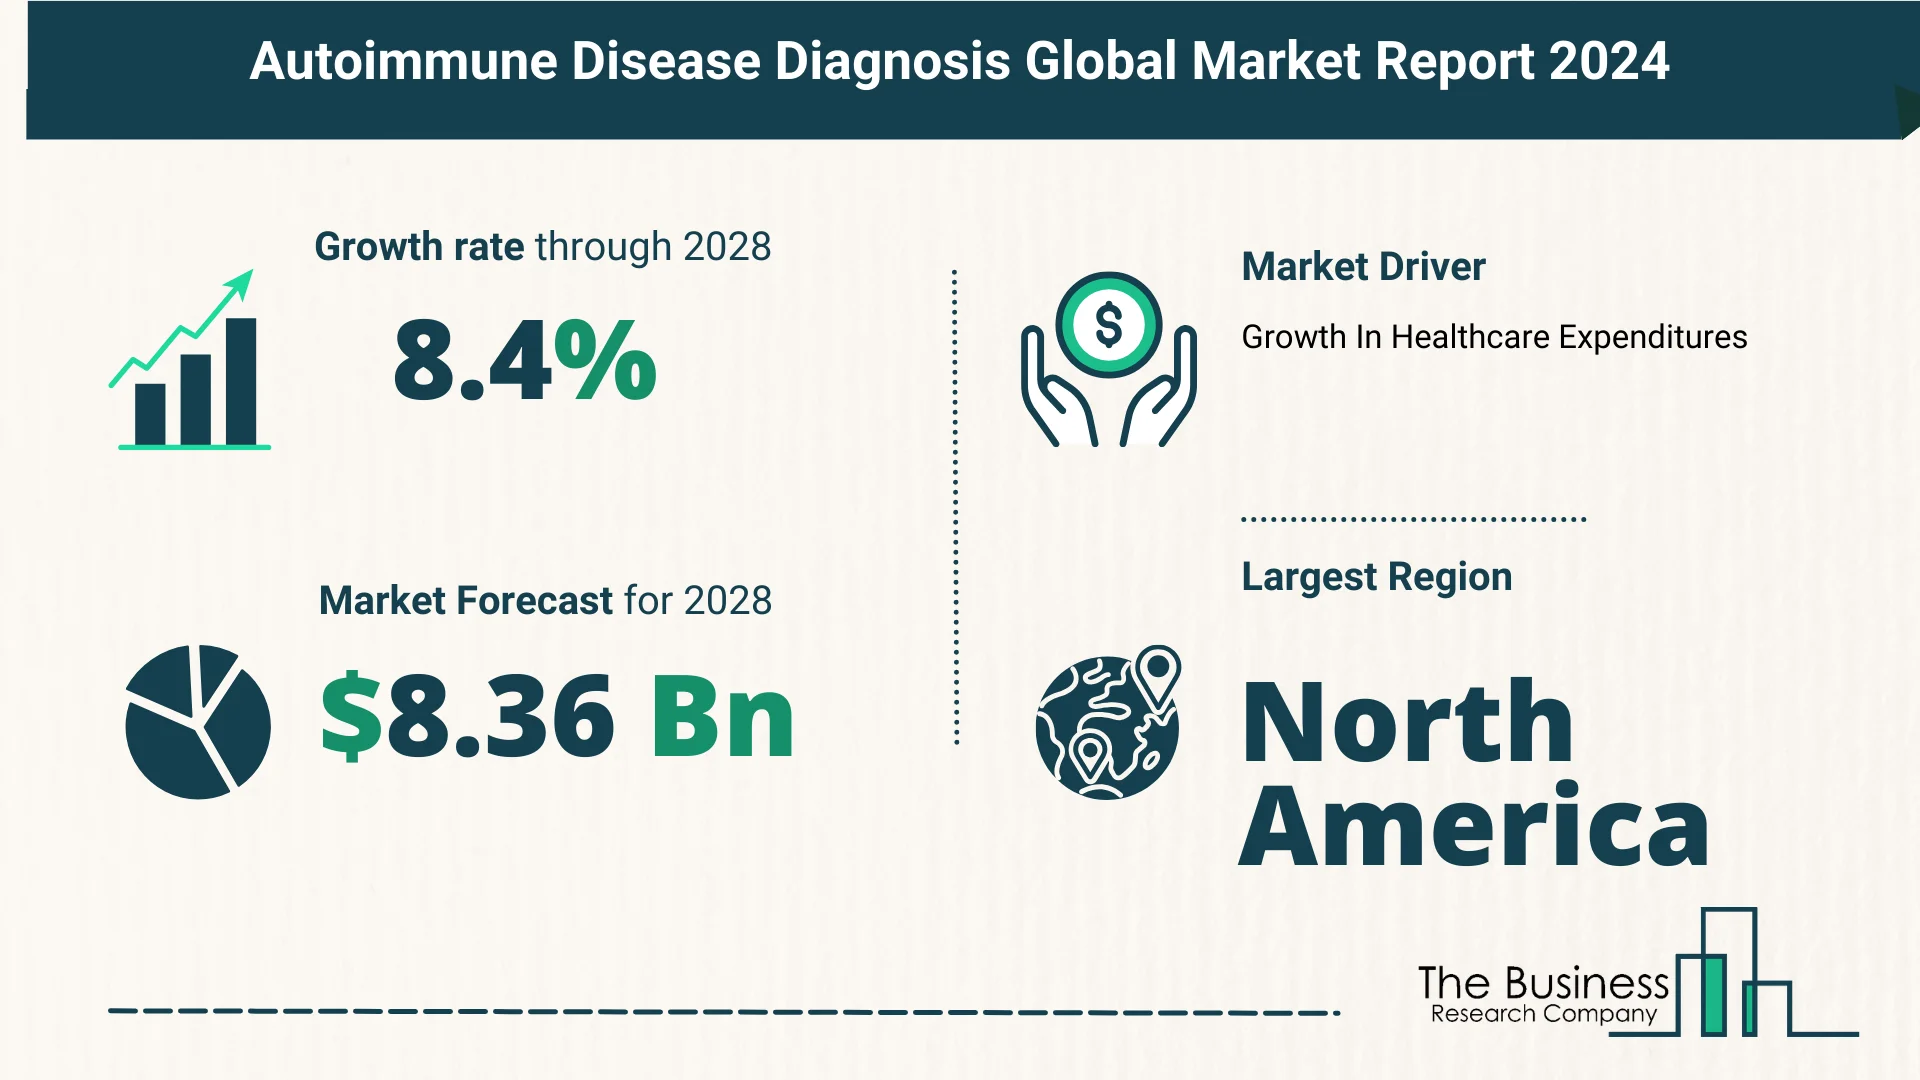 Global Autoimmune Disease Diagnosis Market